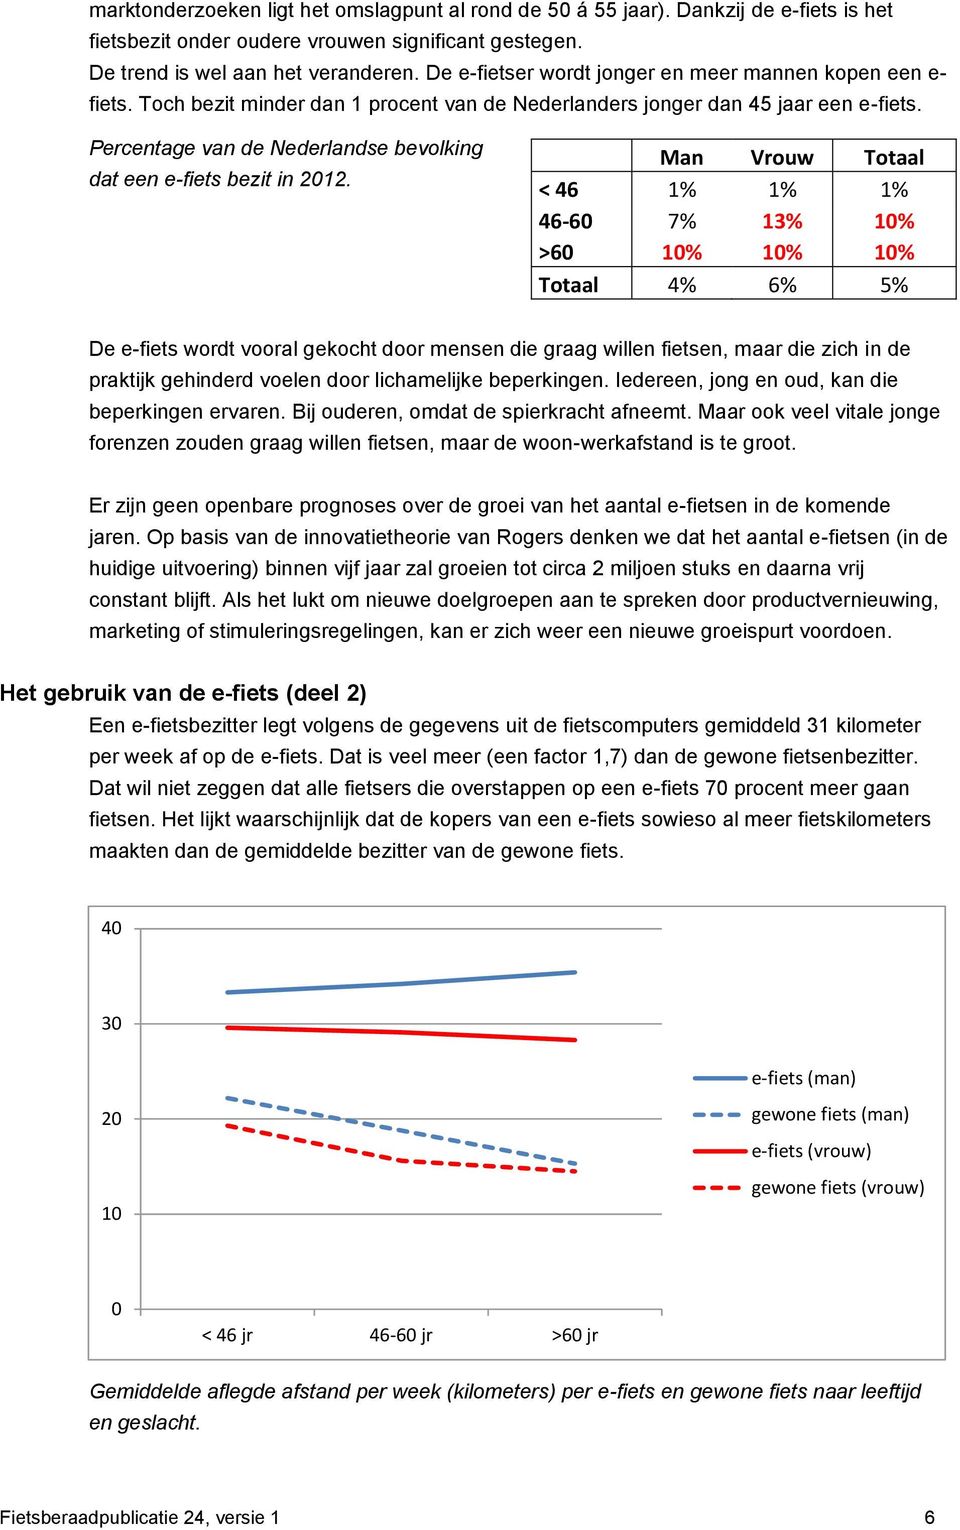 Percentage van de Nederlandse bevolking dat een e-fiets bezit in 2012.